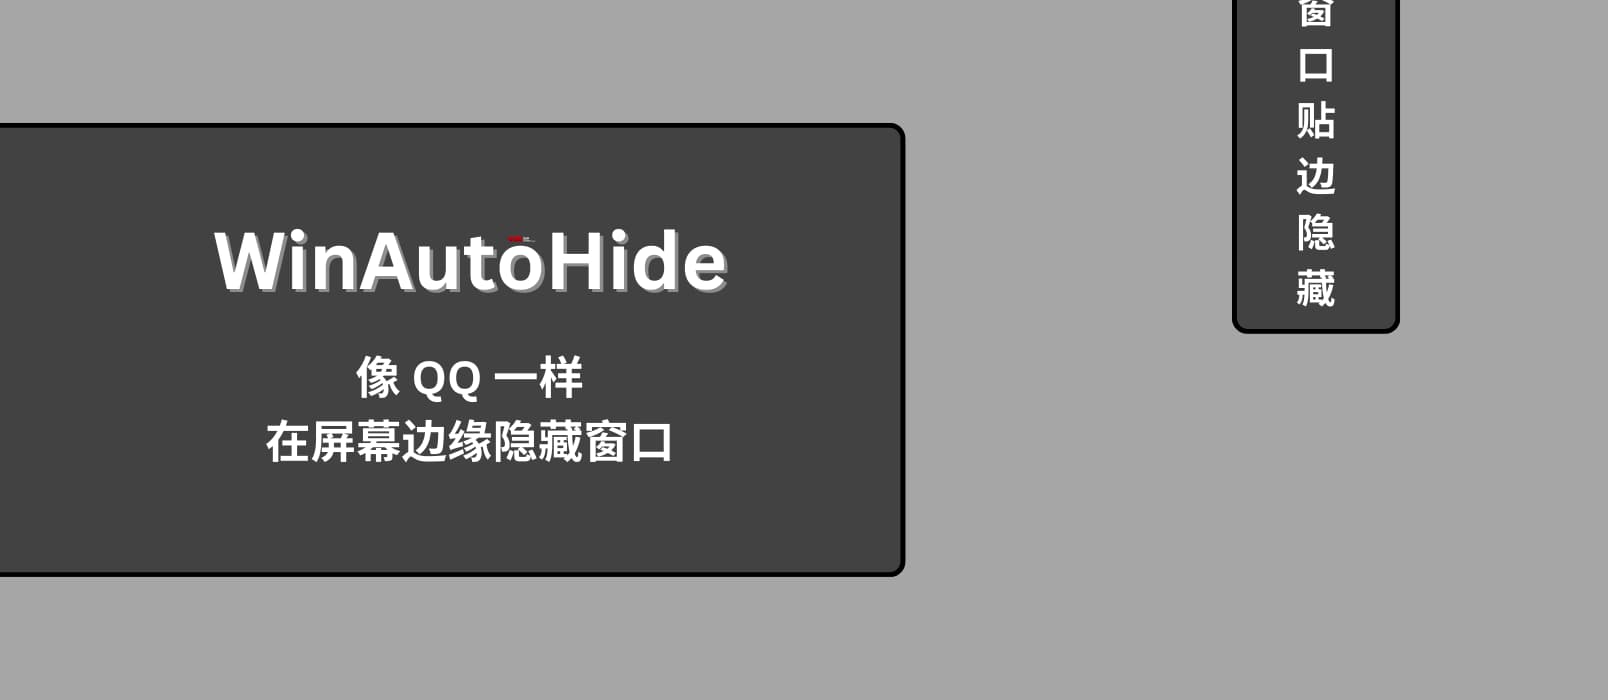 WinAutoHide - Win 11 可用，像 QQ 一样在屏幕边缘隐藏窗口